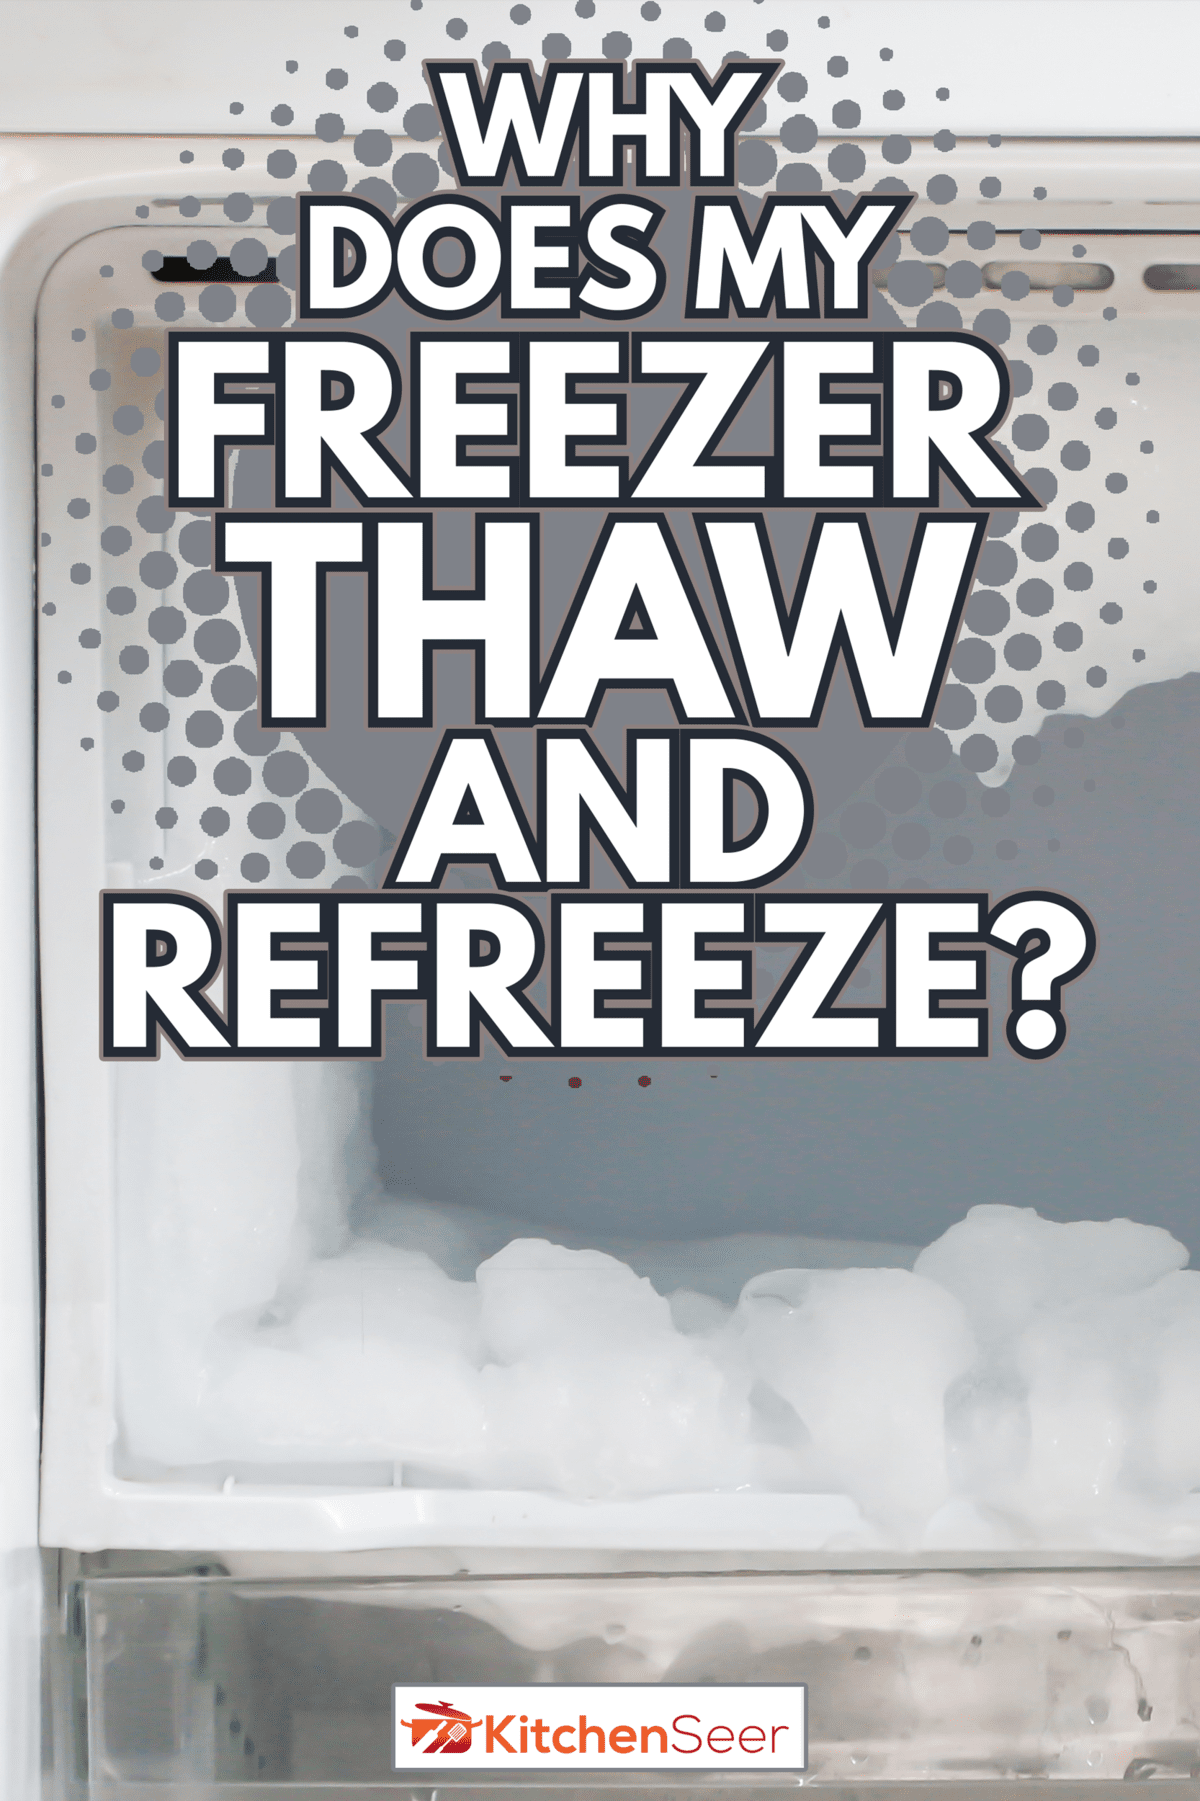 许多冰在冰箱里冻结-为什么我的冰箱解冻和重新冻结